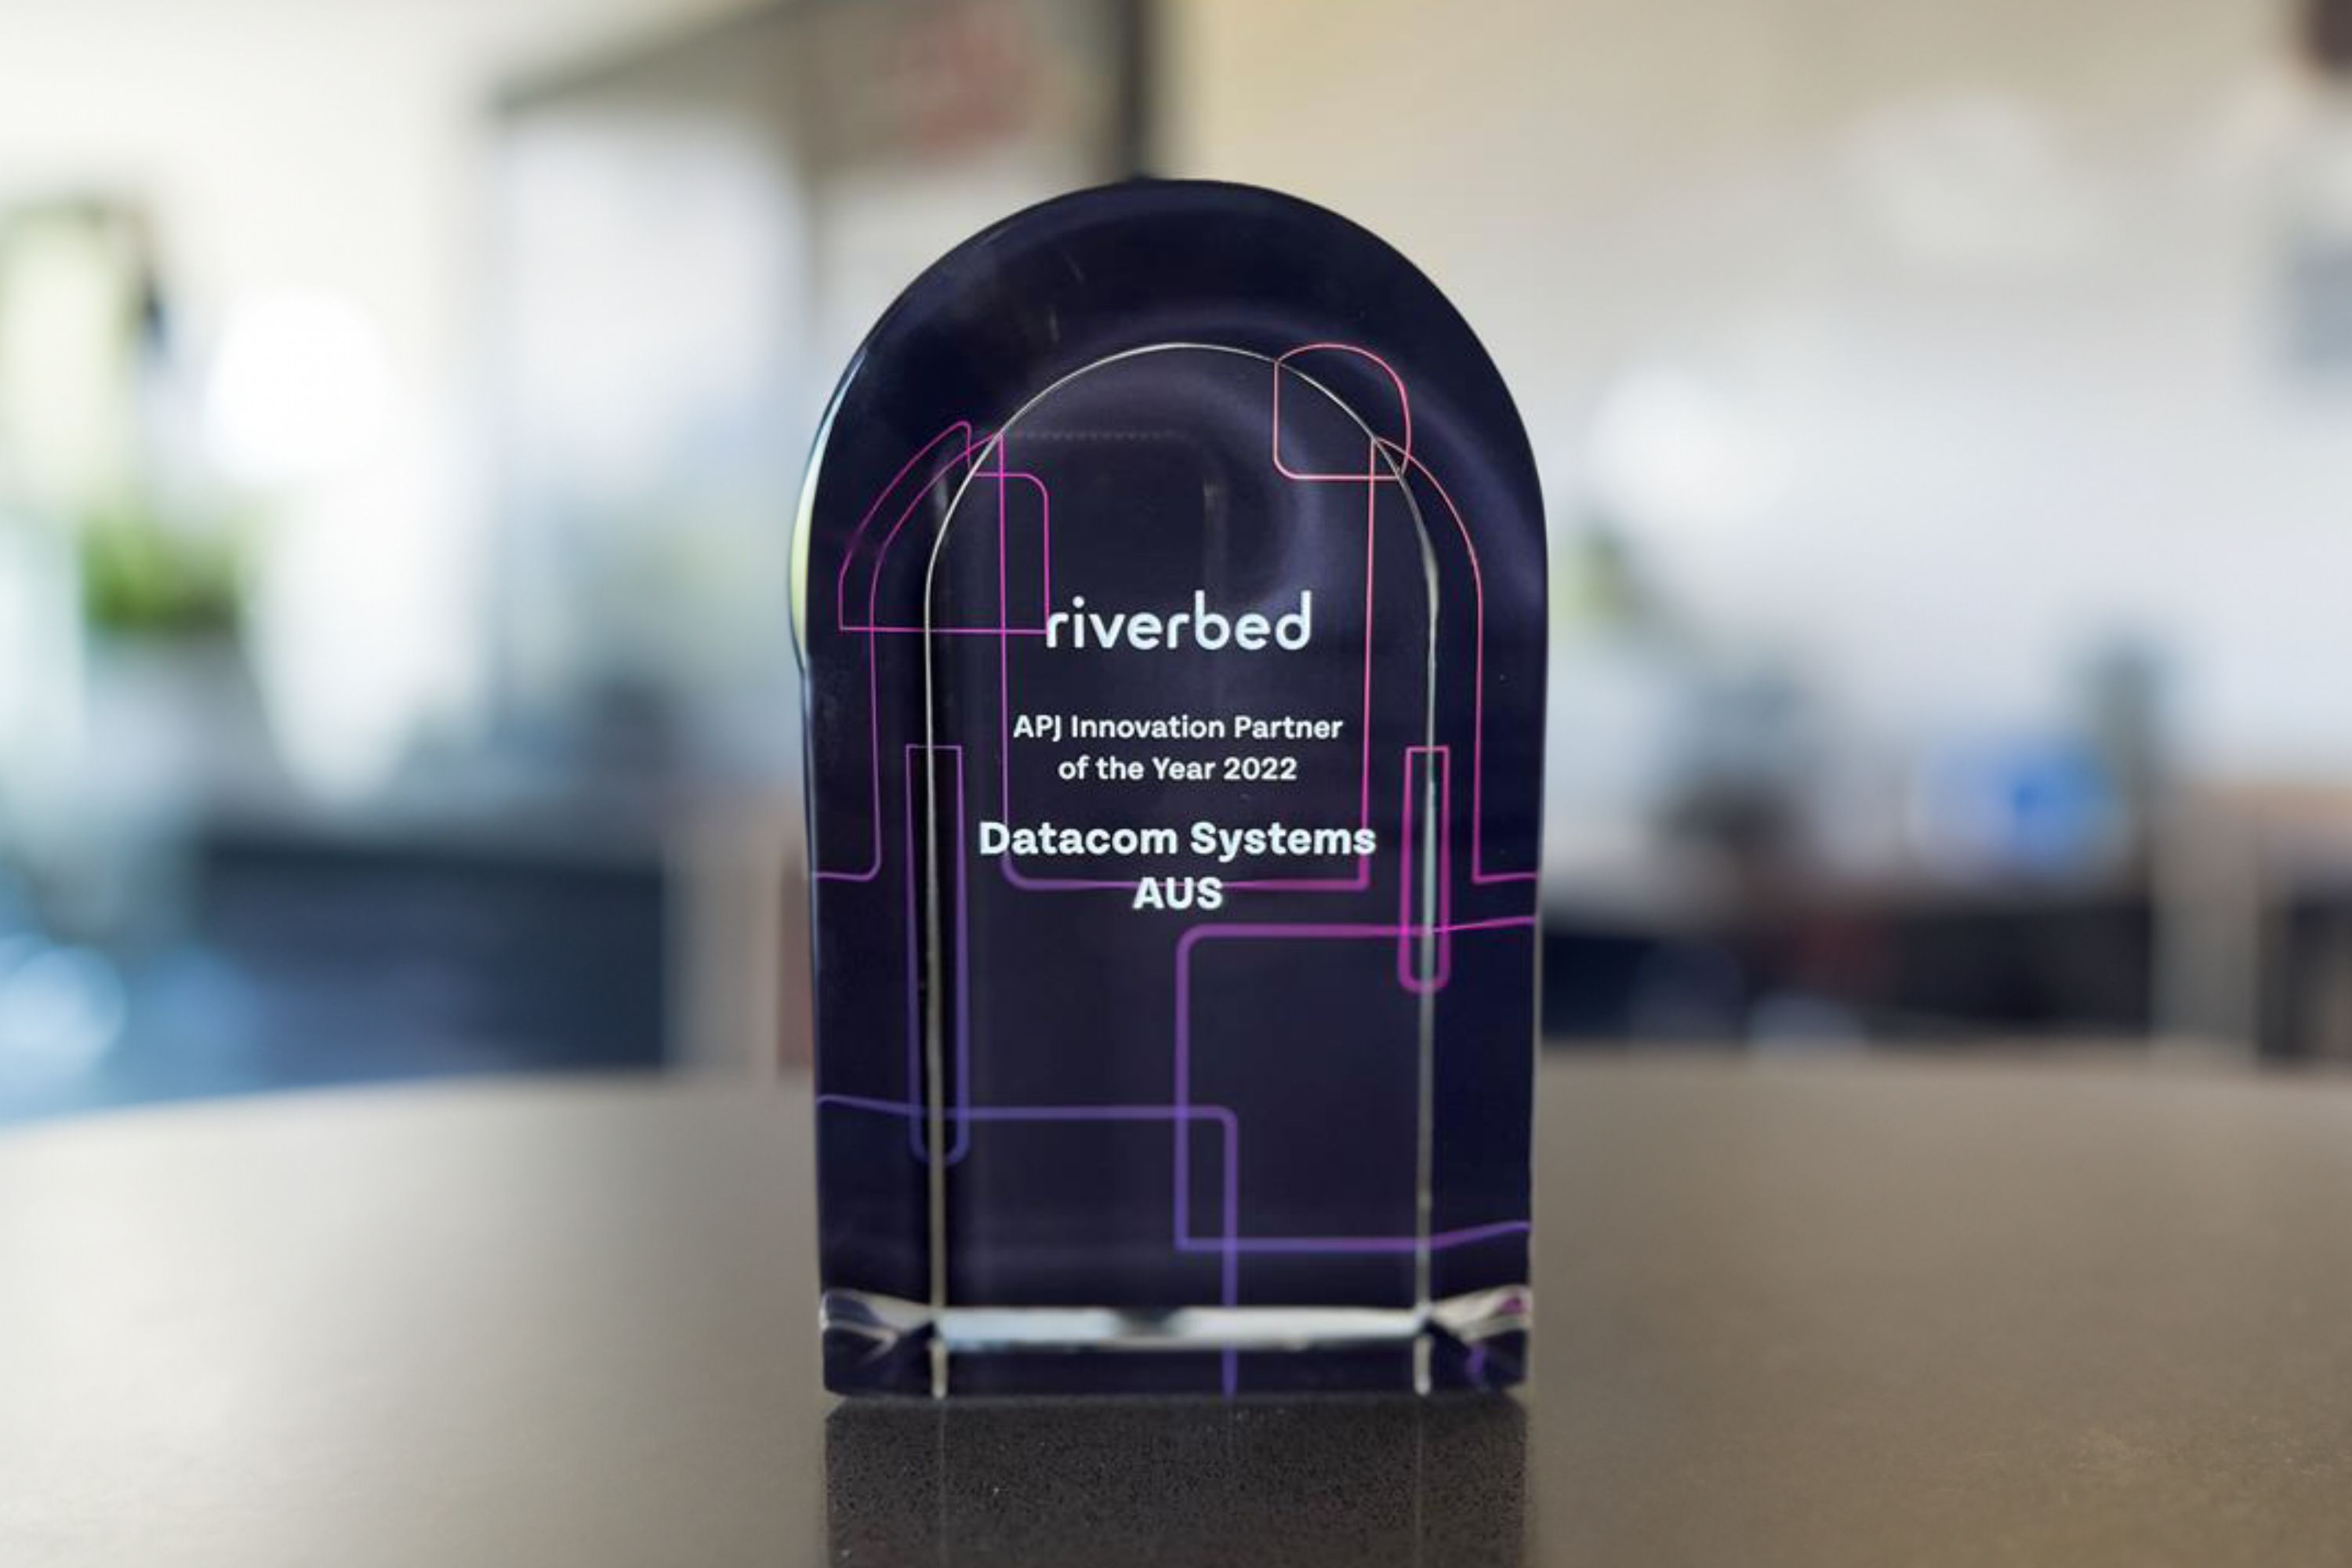 Riverbed awards trophy